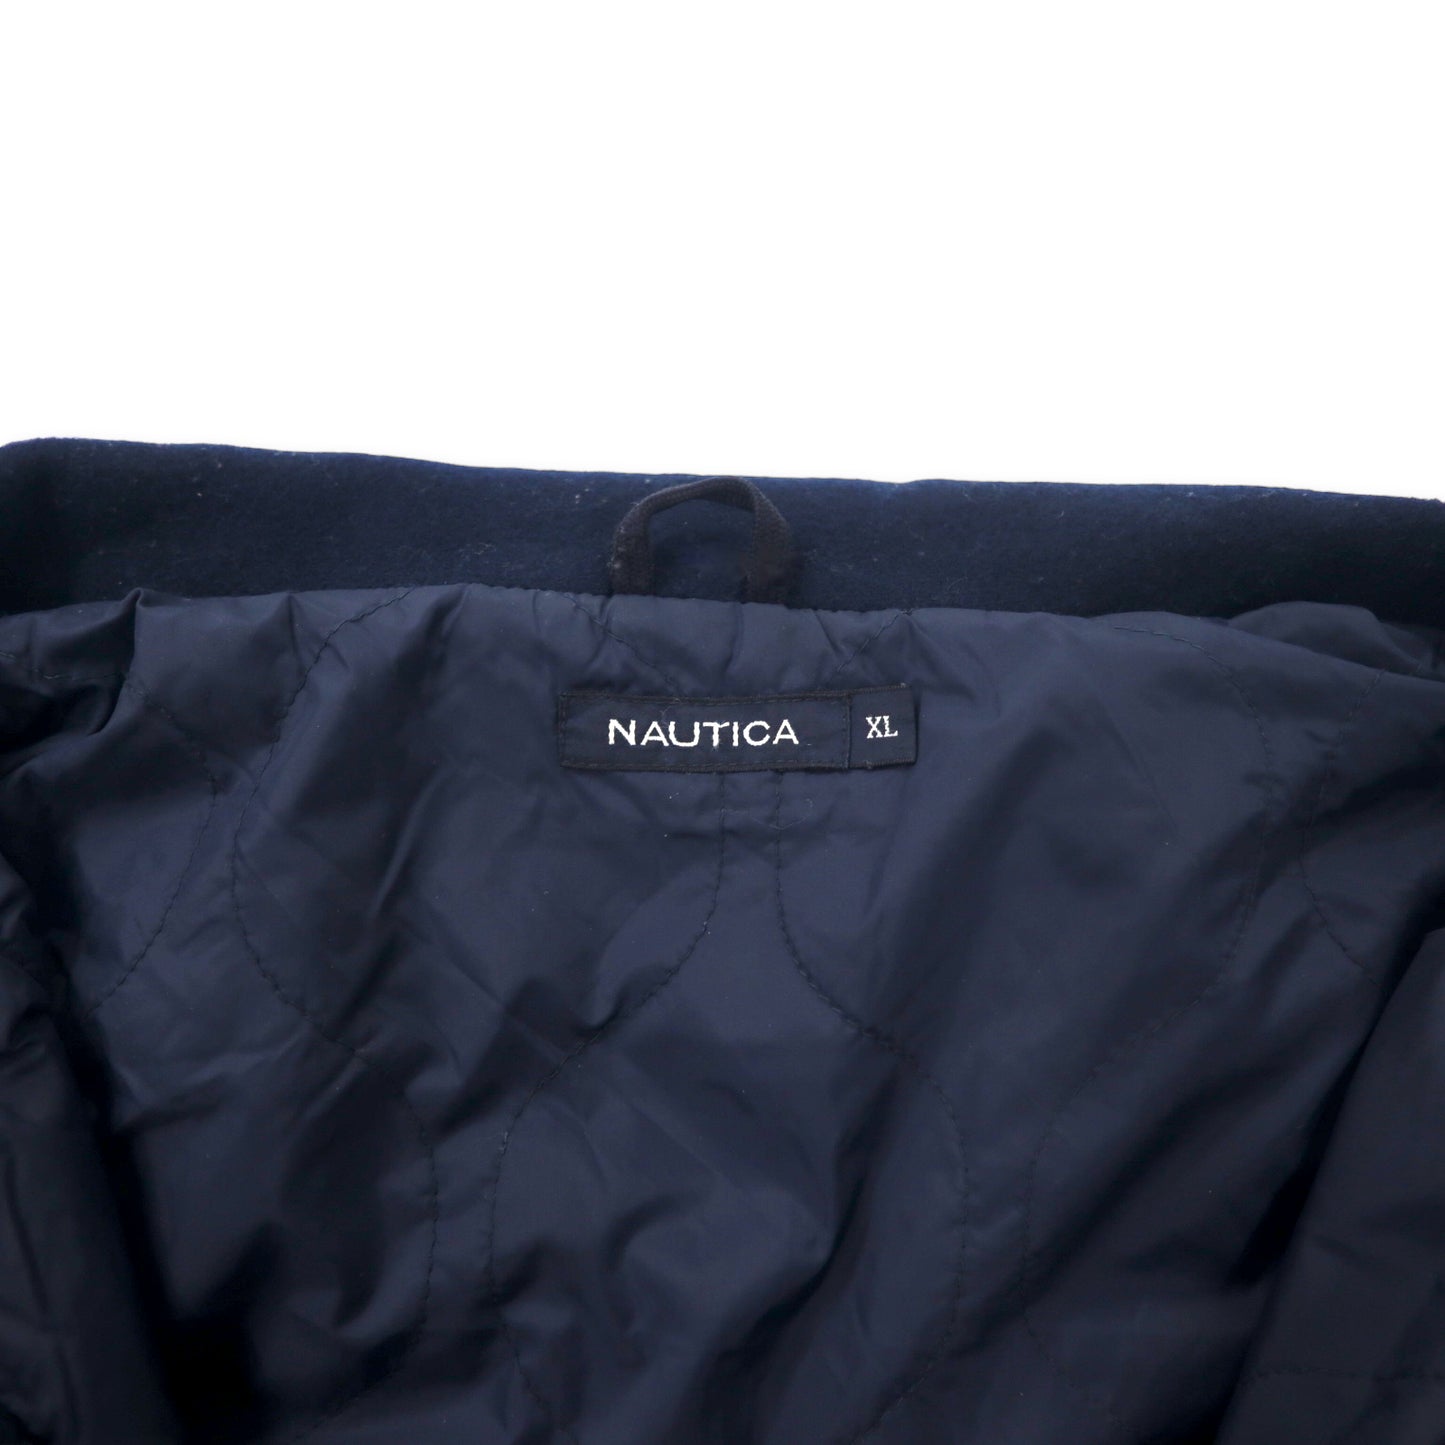 NAUTICA 異素材切り替え オーバーコート XL ネイビー ウール フード収納式 ダブルジップ